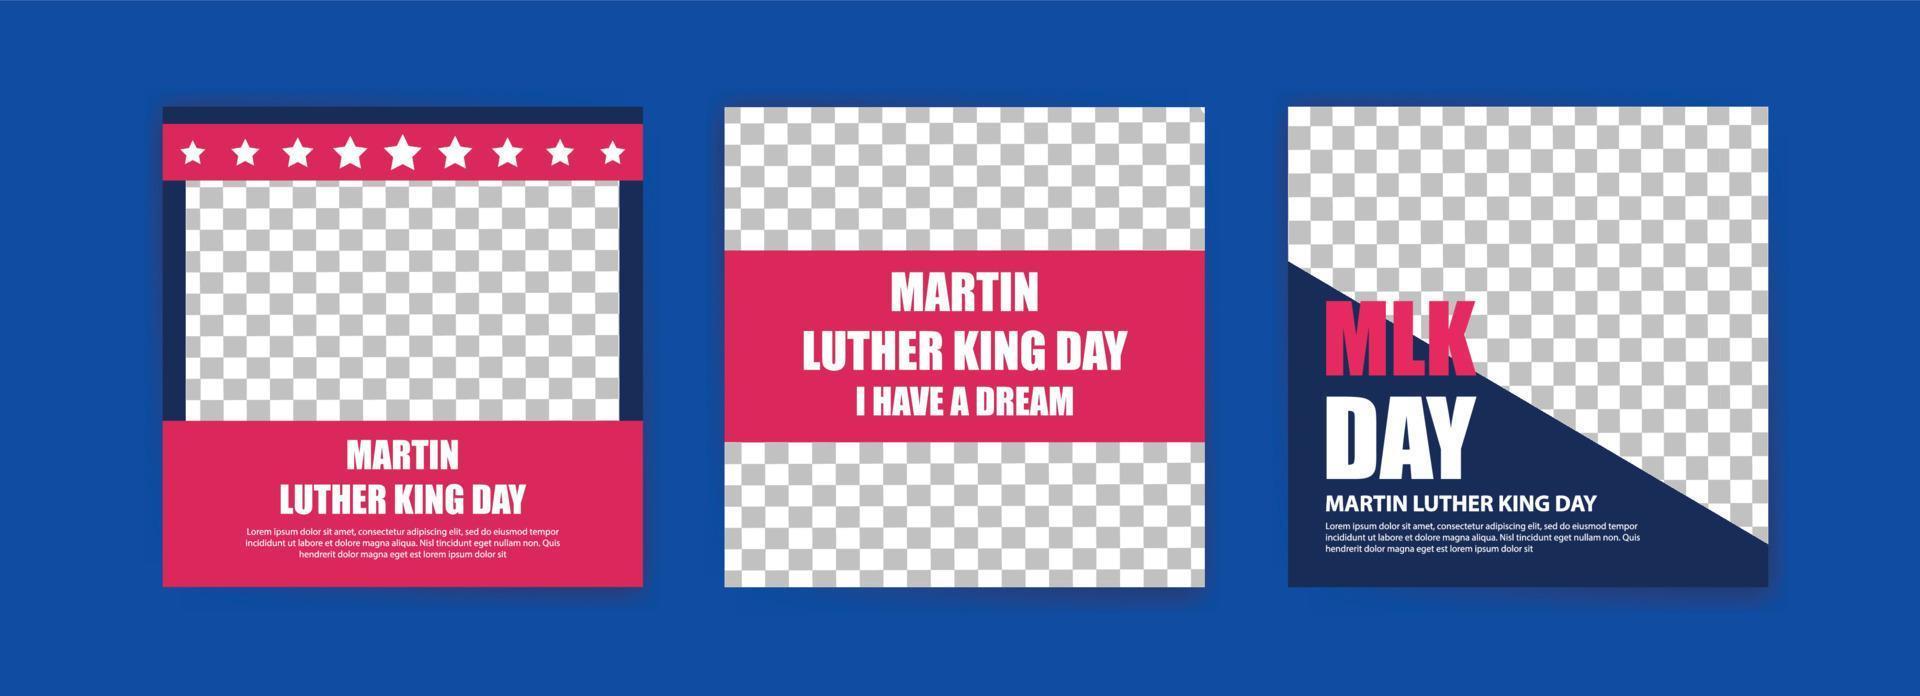 inläggsmall för sociala medier för martin luther king day. vektor bakgrund för banners, affischer och annonser i sociala medier.